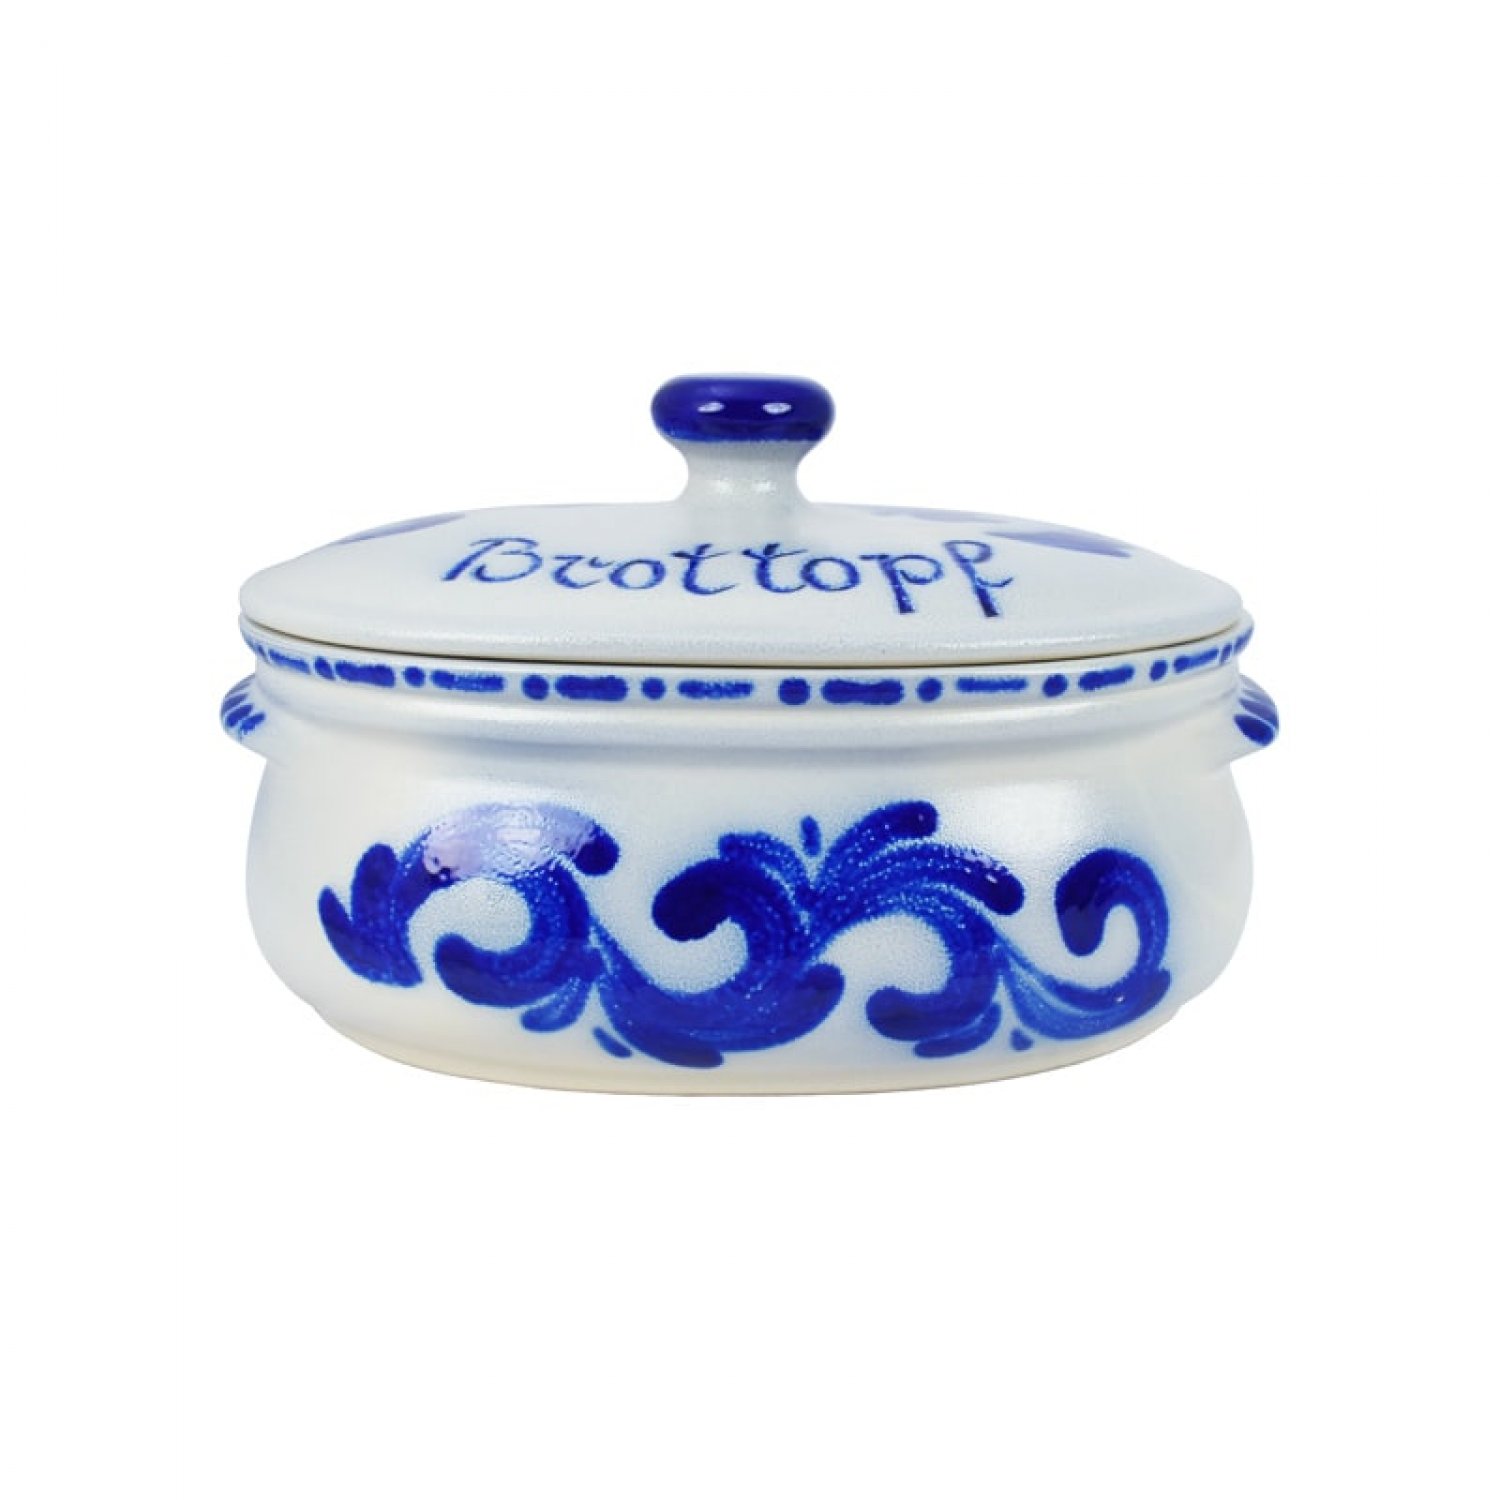 Bild zu Brottopf Keramik oval klein Dekor blau